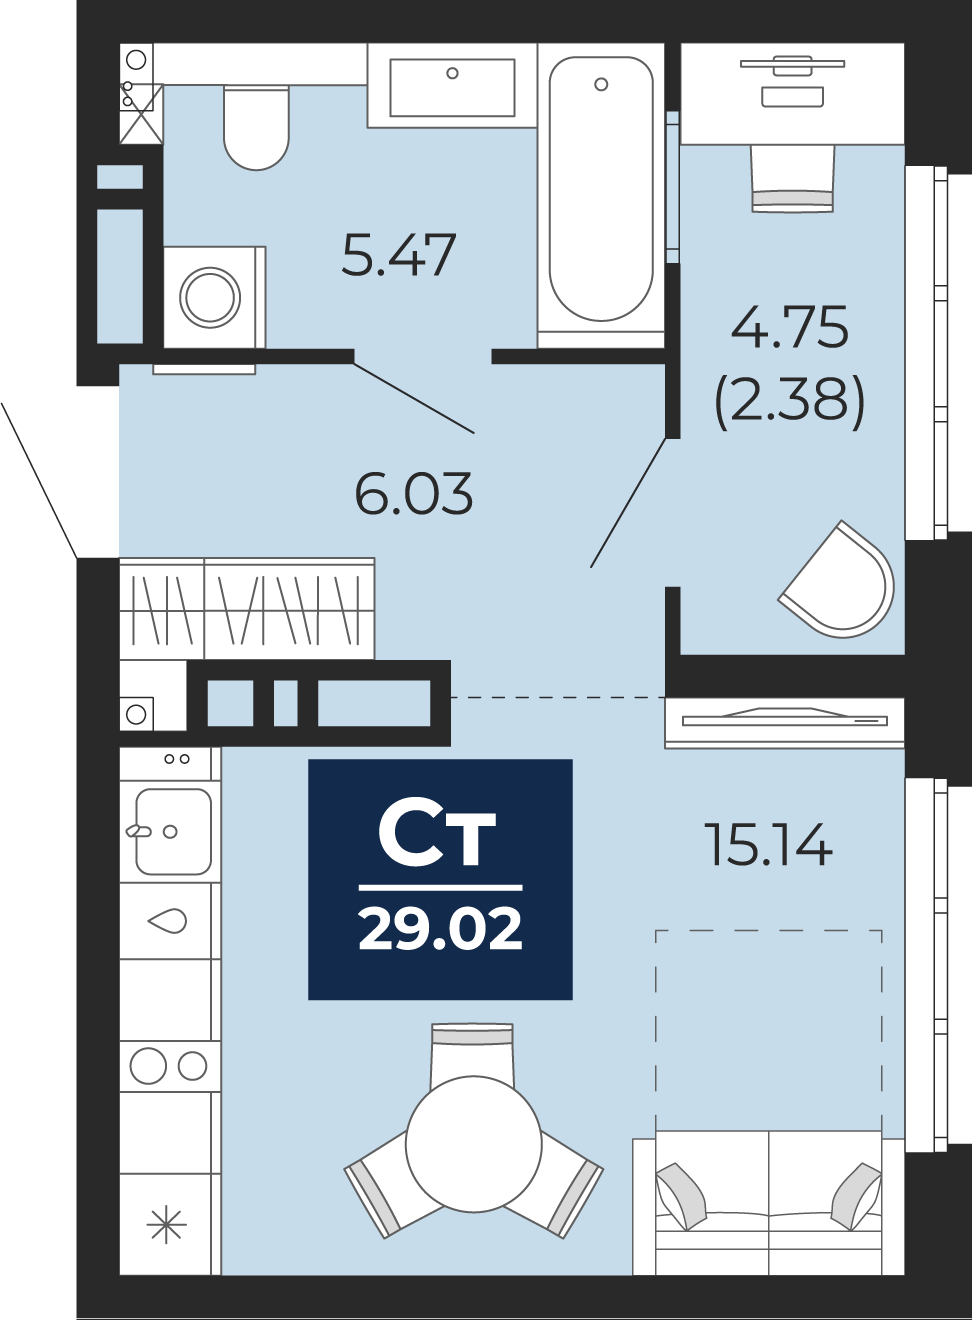 Квартира № 431, Студия, 29.02 кв. м, 20 этаж